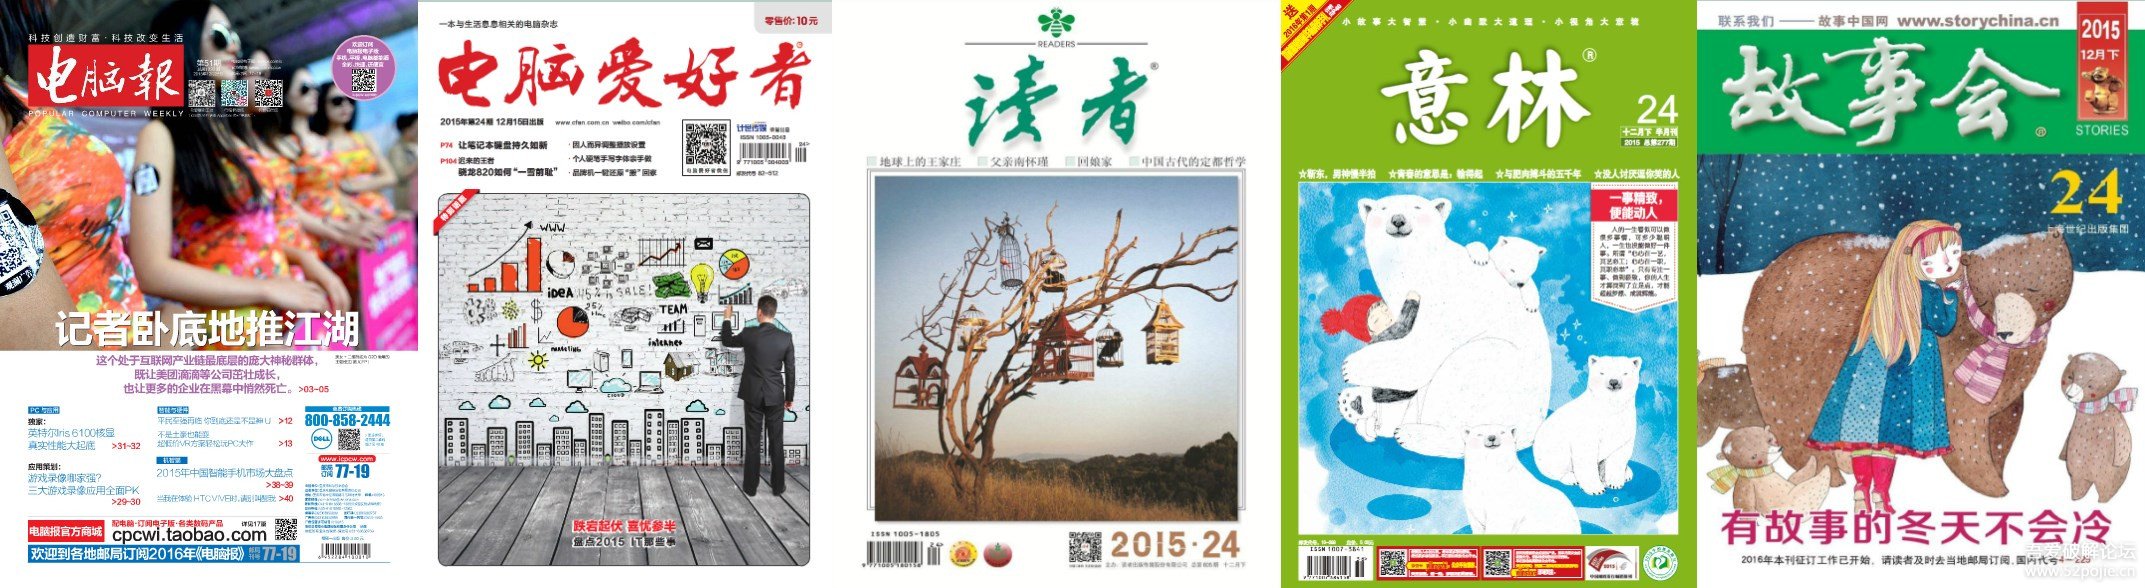 电脑报》+《电脑爱好者》+《读者》+《意林》+《故事会》杂志2015年全年版合集